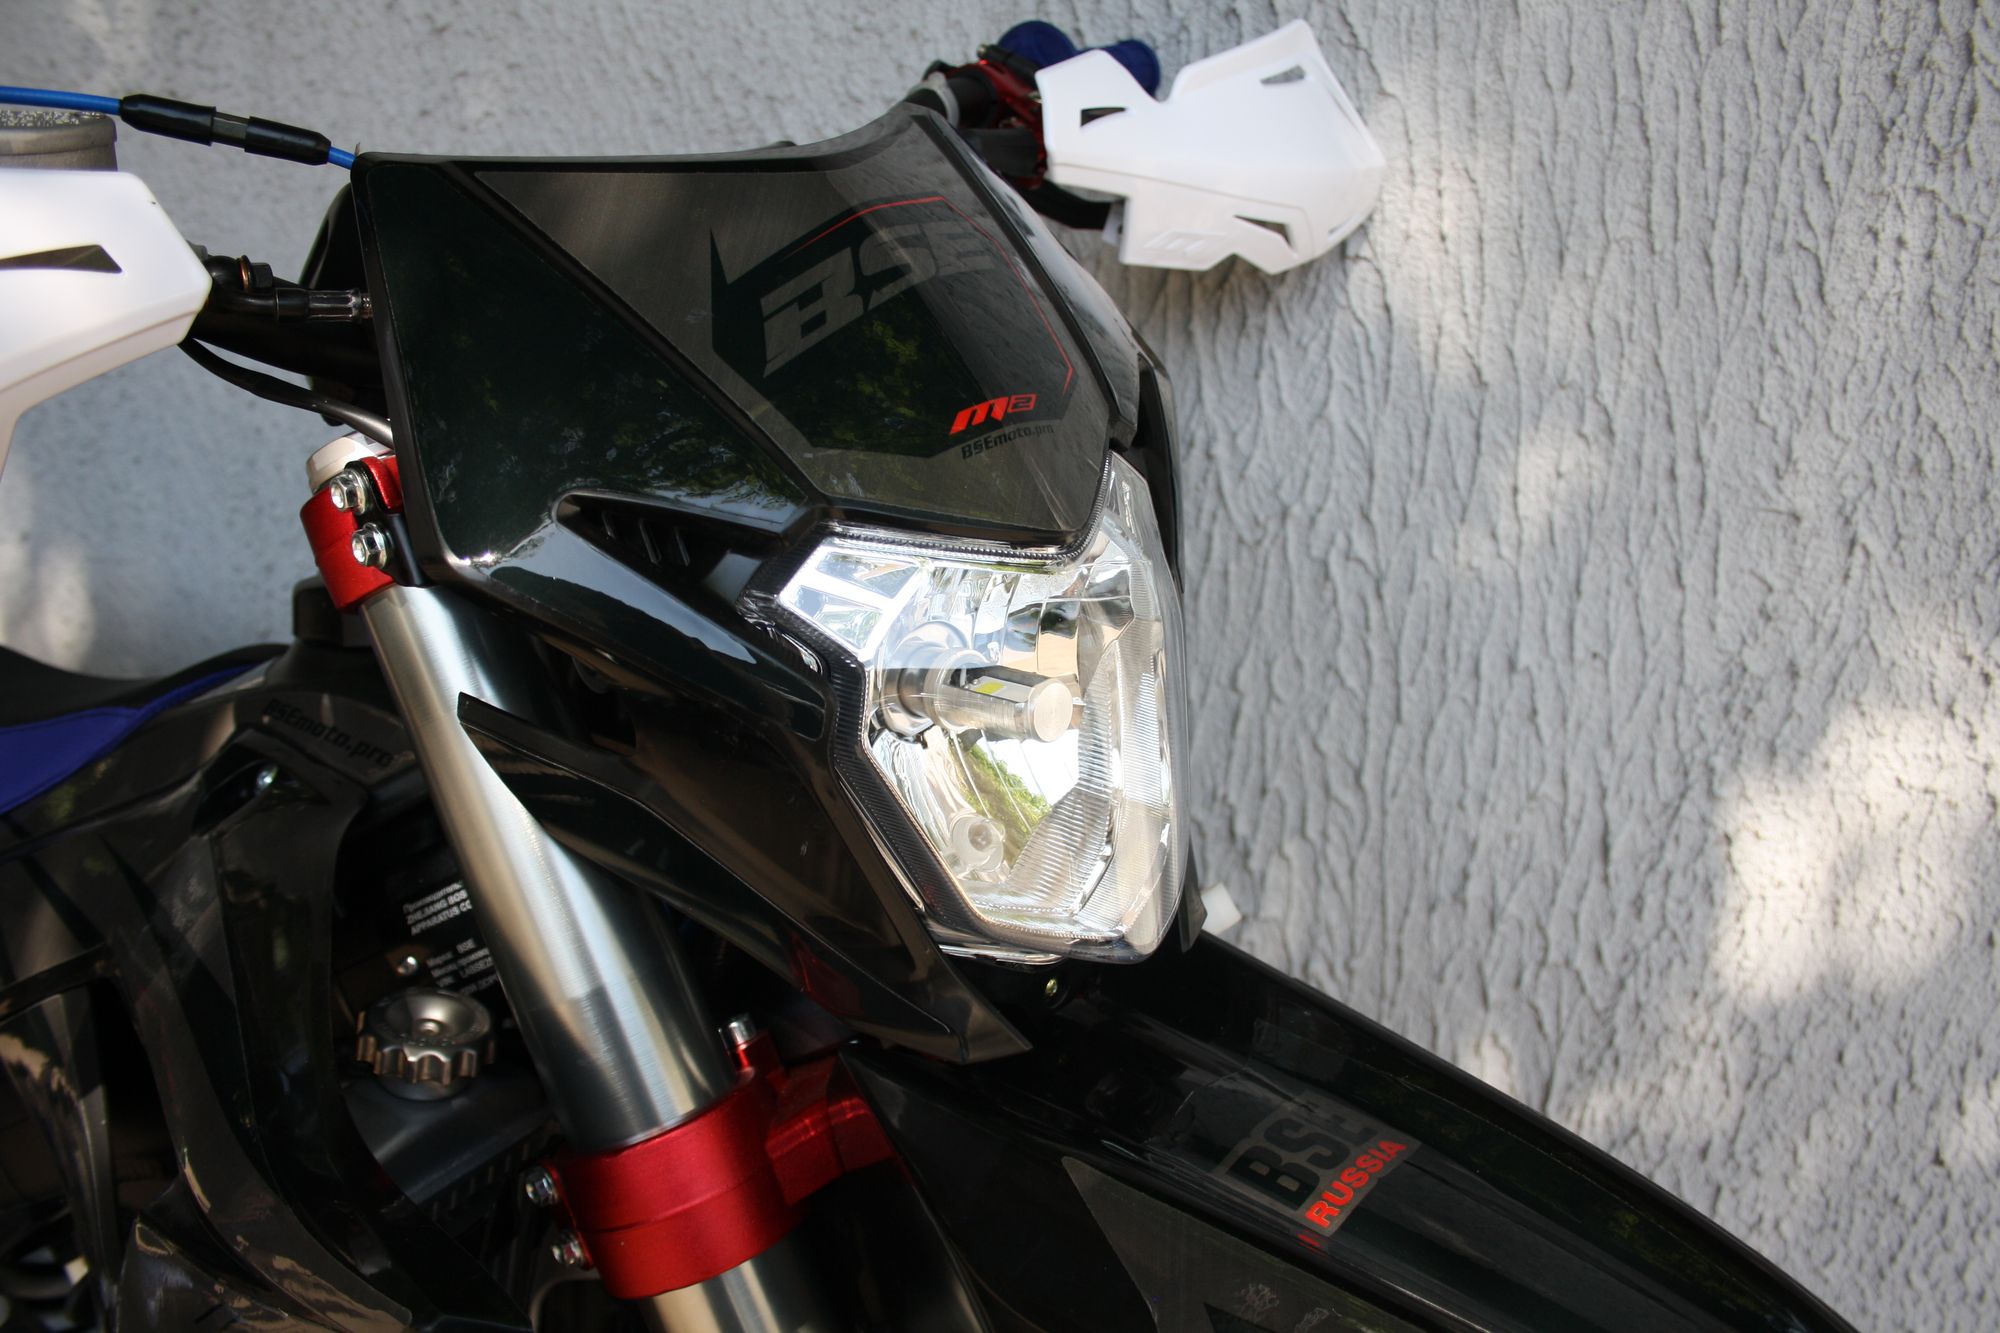 Эндуро / кроссовый мотоцикл BSE M2 Force Black